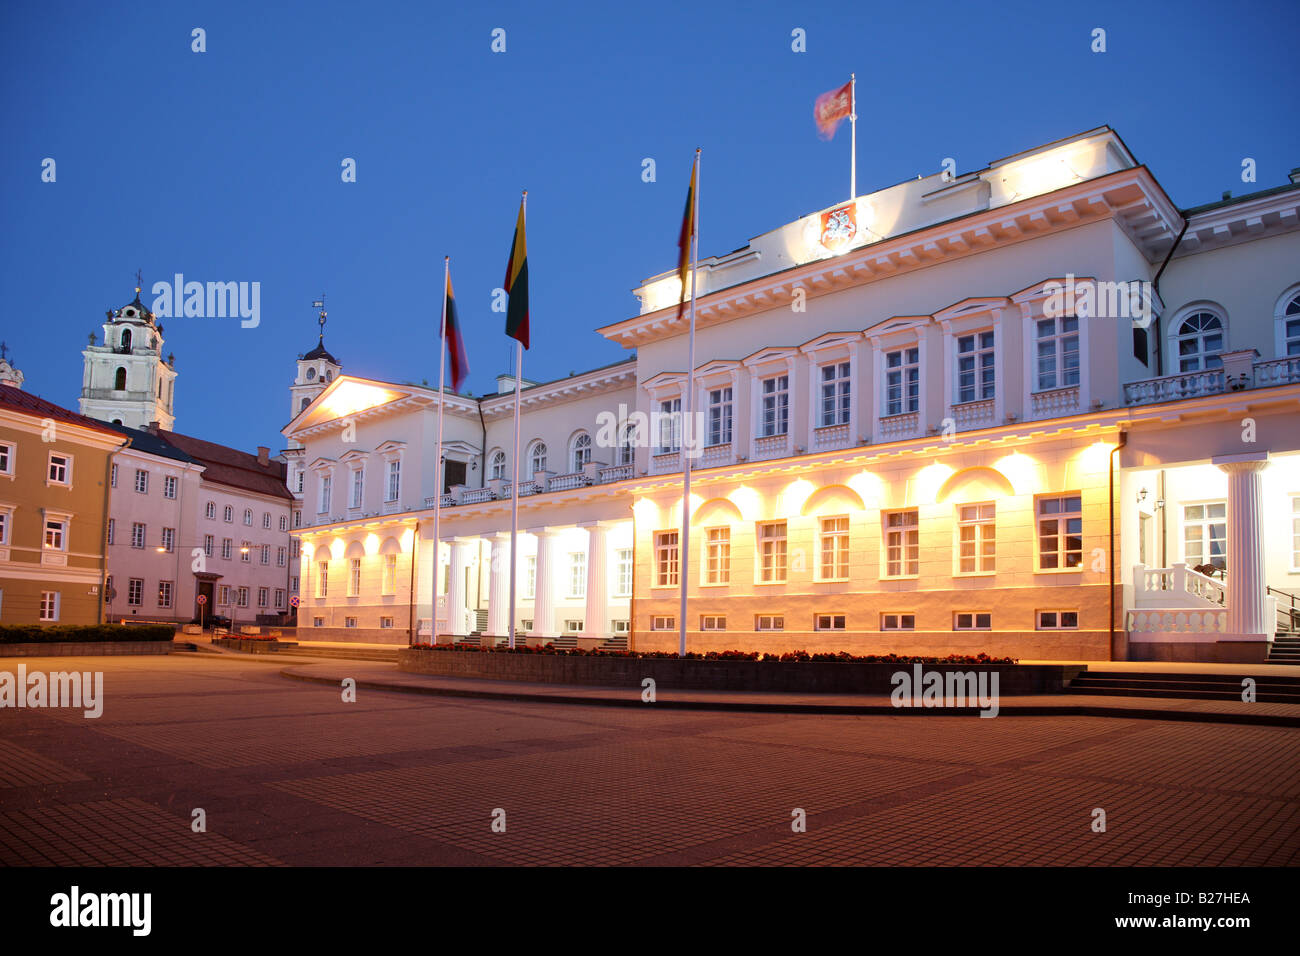 LTU Lituanie Vilnius capitale vieille ville palais présidentiel Banque D'Images